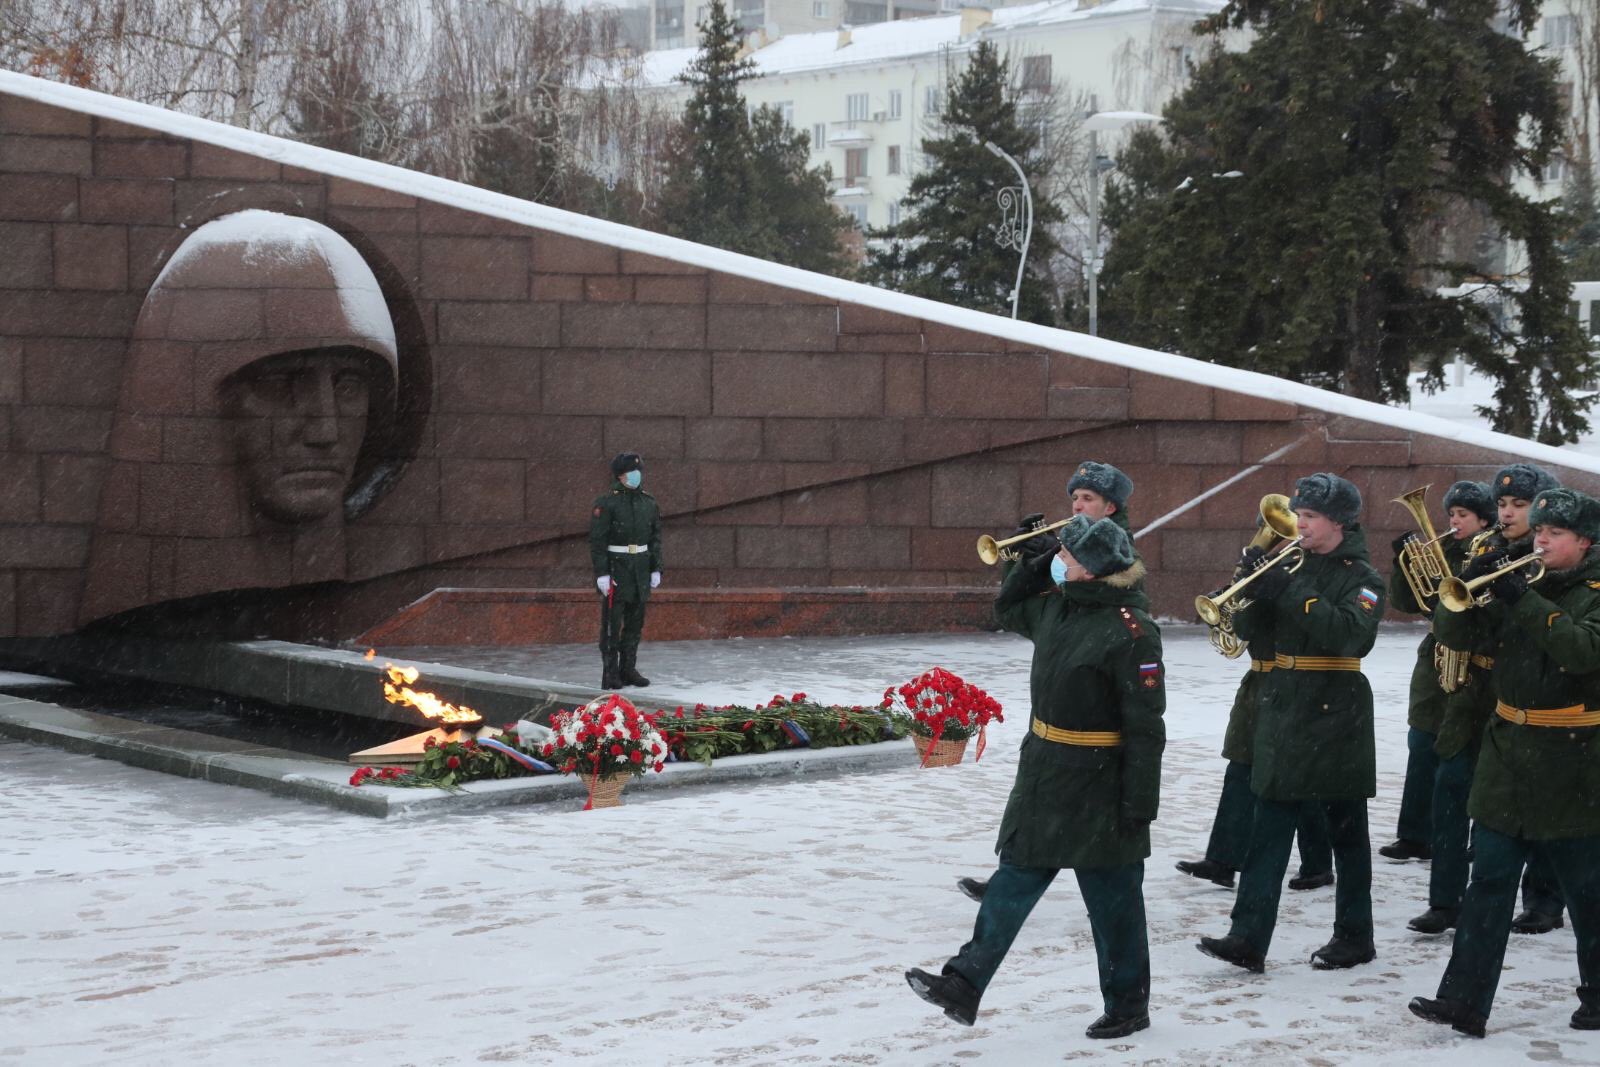 Сколько погибло в сталинградскую